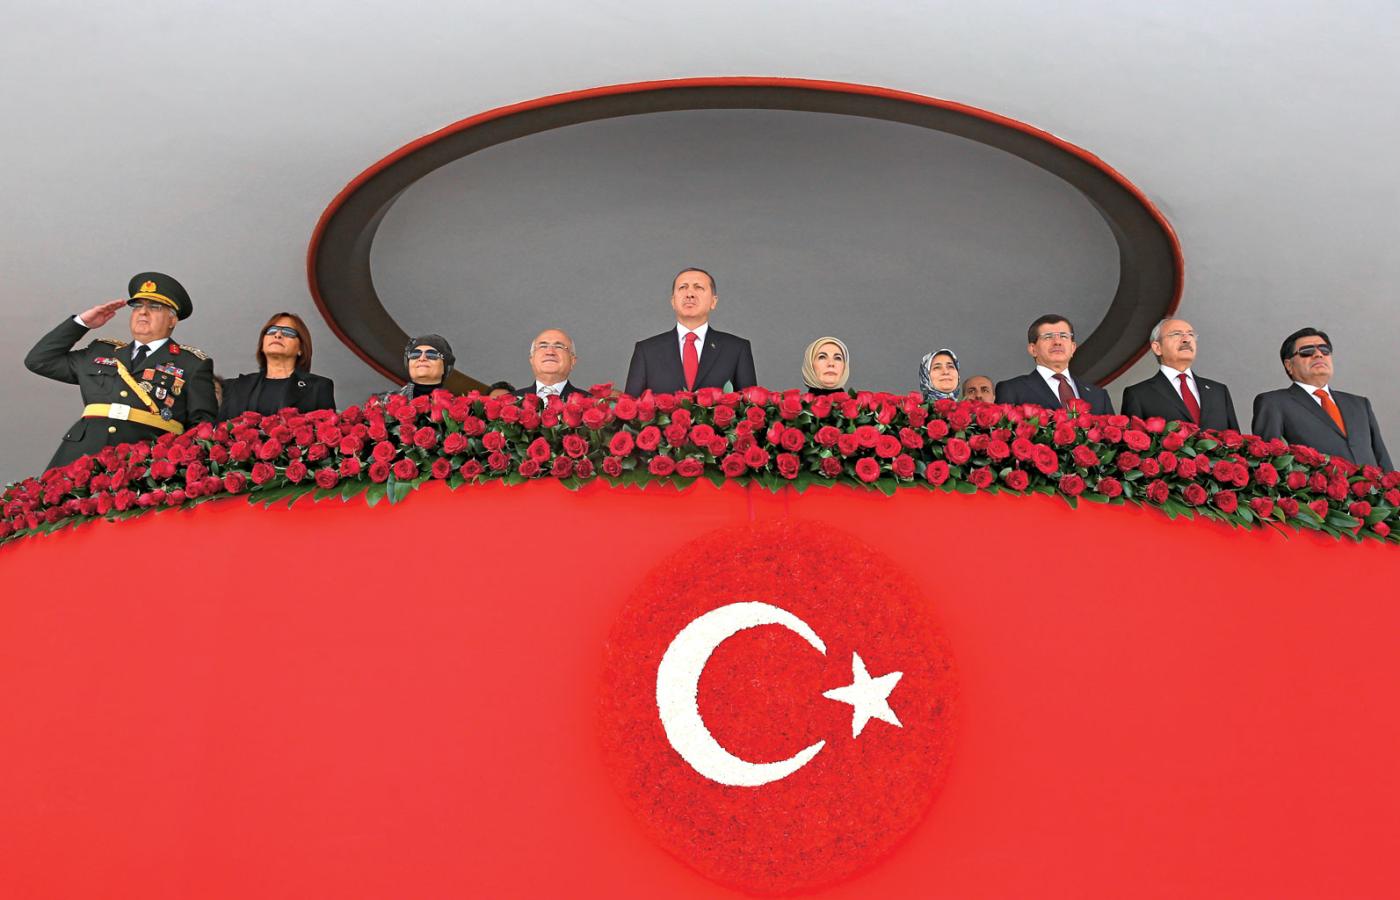 Prezydent (w centrum), a wcześniej wieloletni premier Turcji, Recep Erdogan jest bardzo czuły na wszelką krytykę.